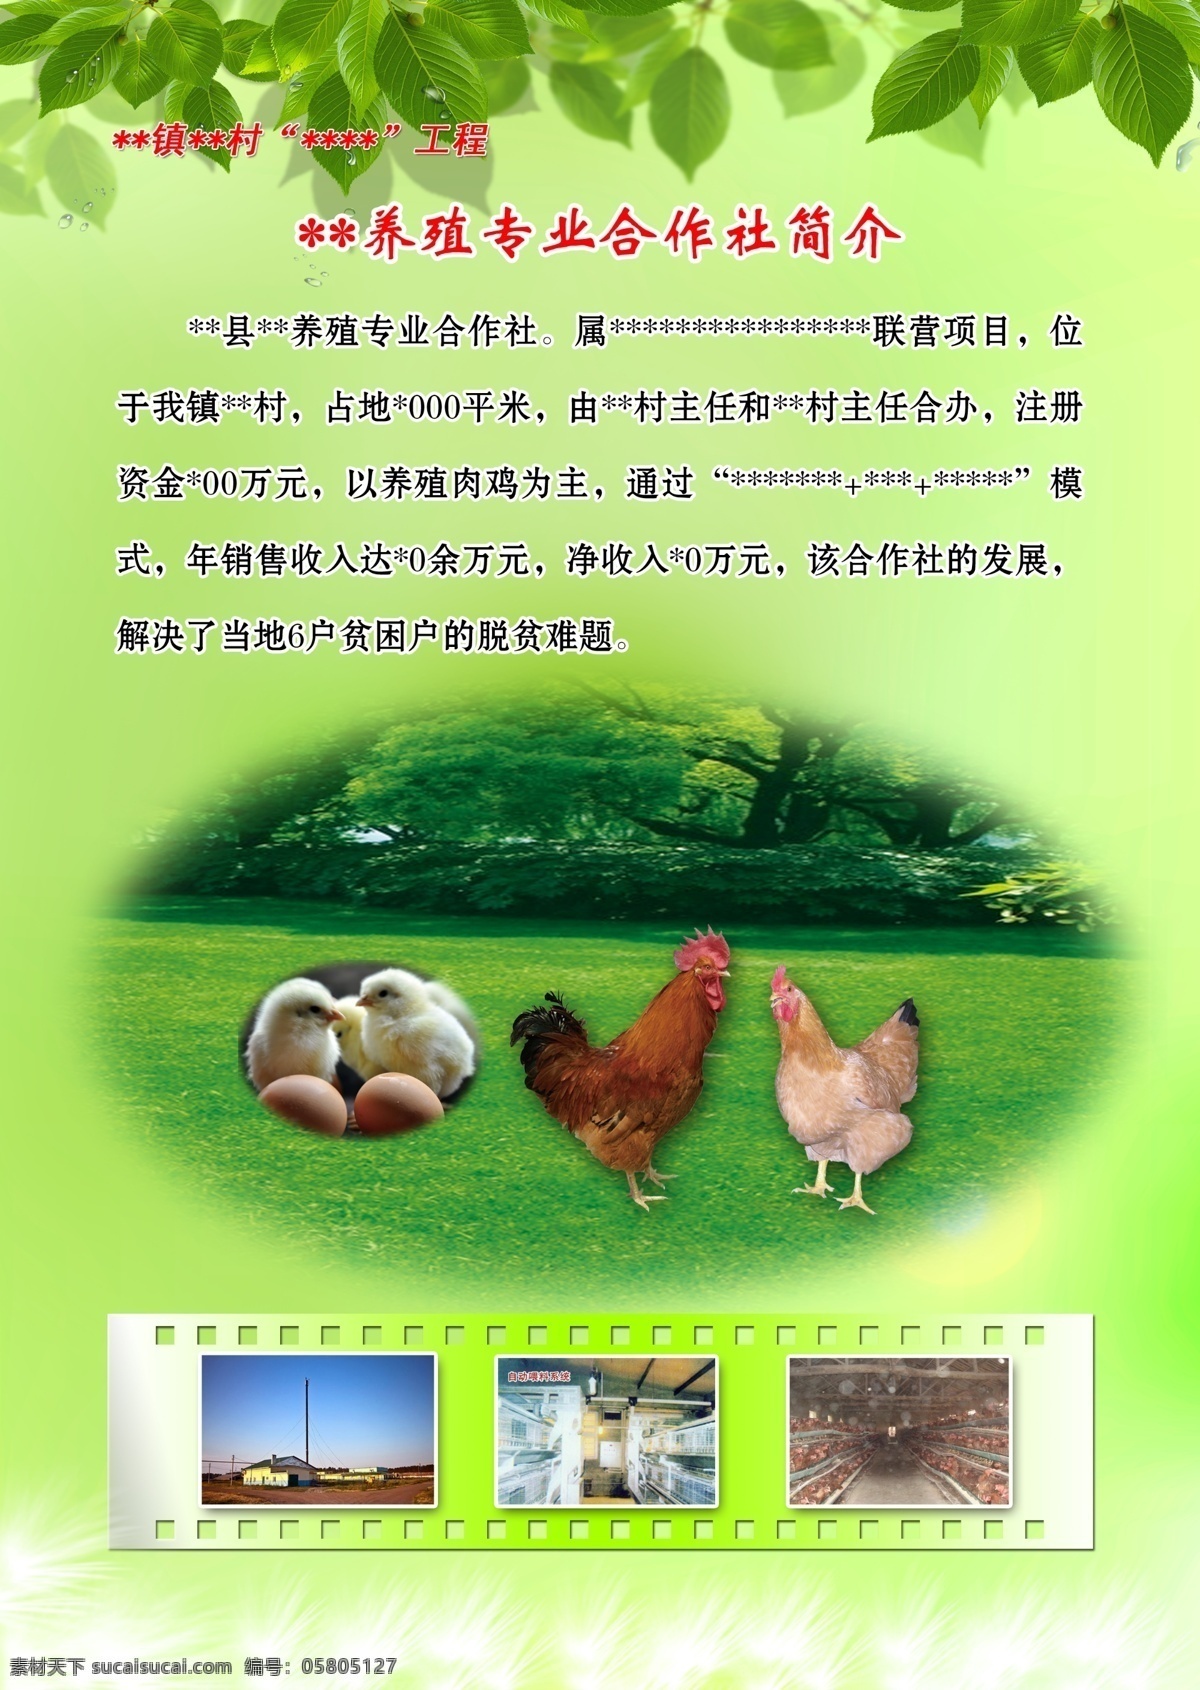 养殖场 简介 海报 饲料 绿色 背景 肉鸡 交卷类 广告设计模板 源文件